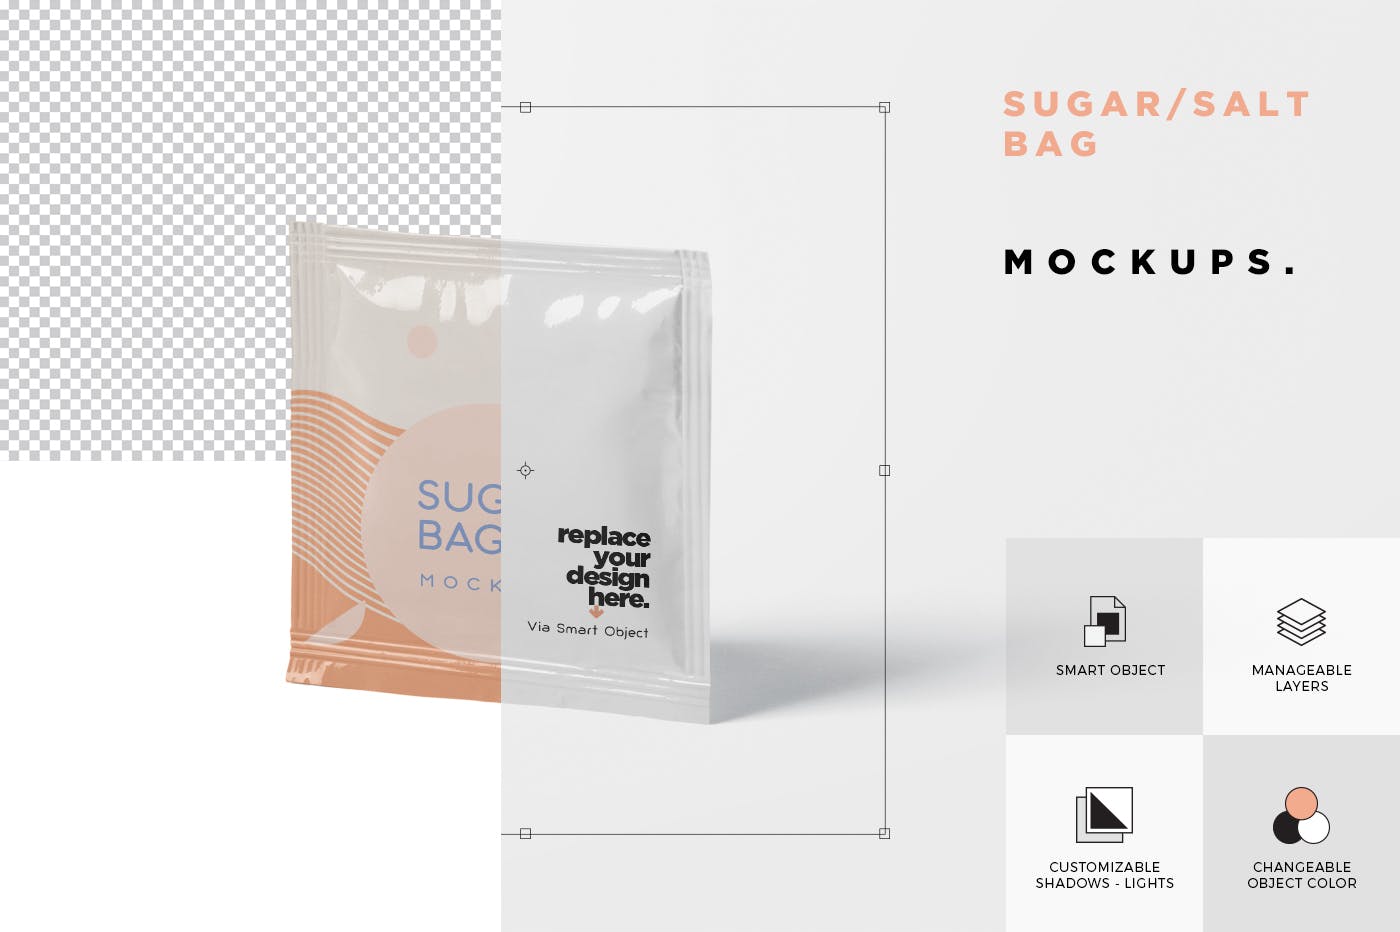 盐袋糖袋包装设计效果图第一素材精选 Salt OR Sugar Bag Mockup – Square Shaped插图(5)